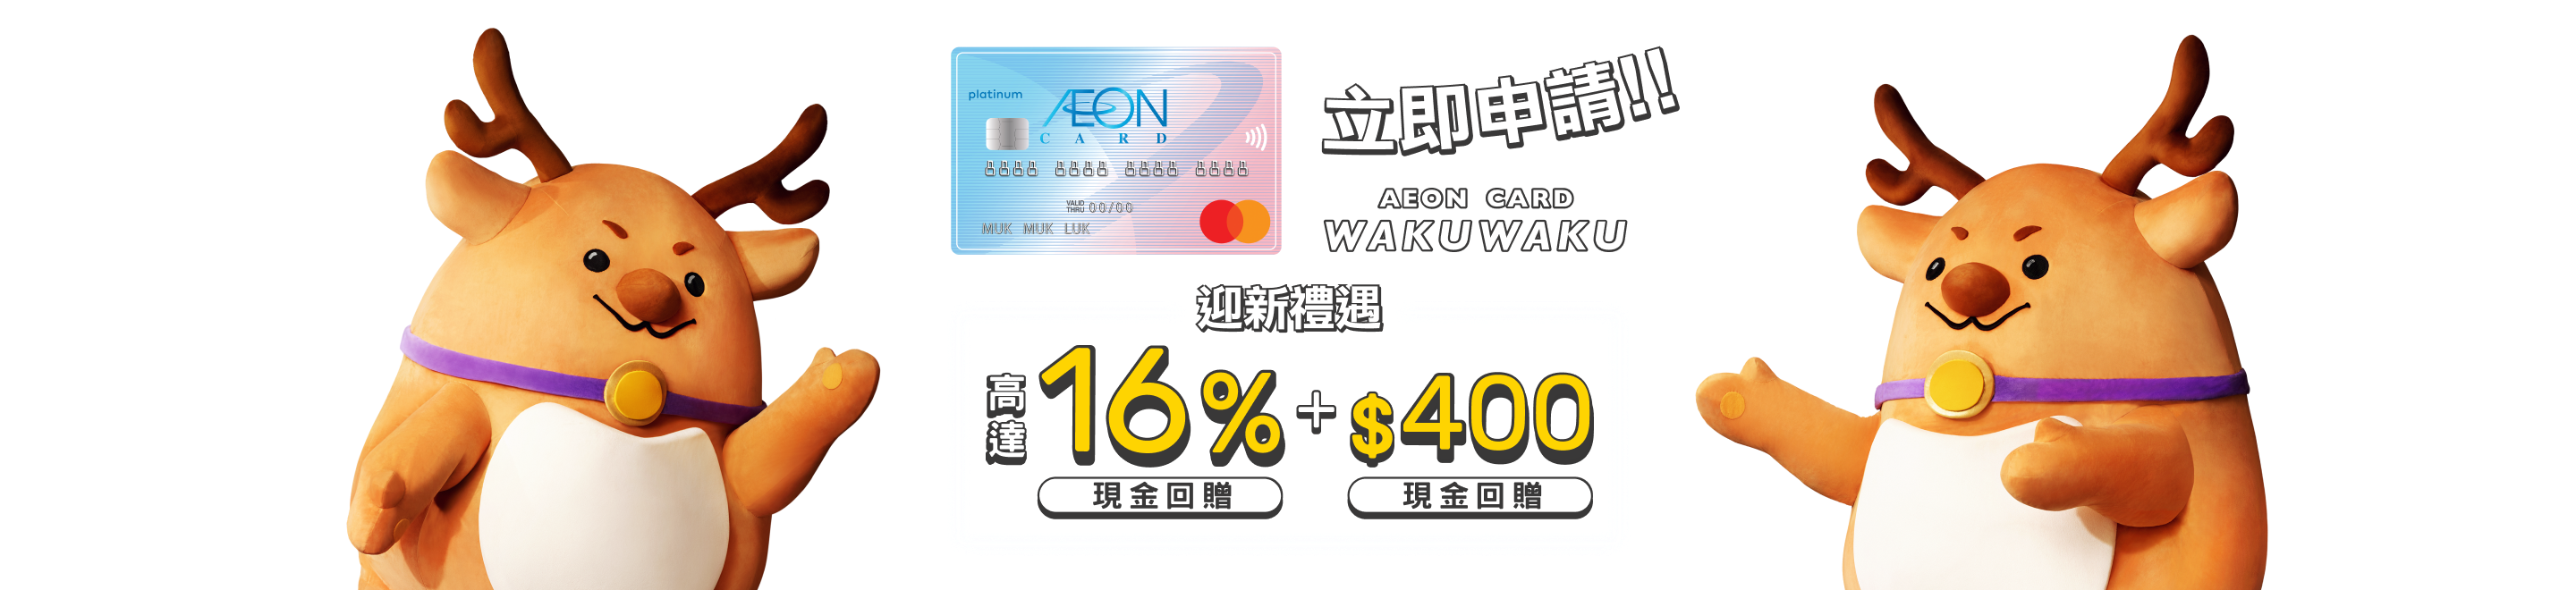 Aeon Card Wakuwaku Promotion